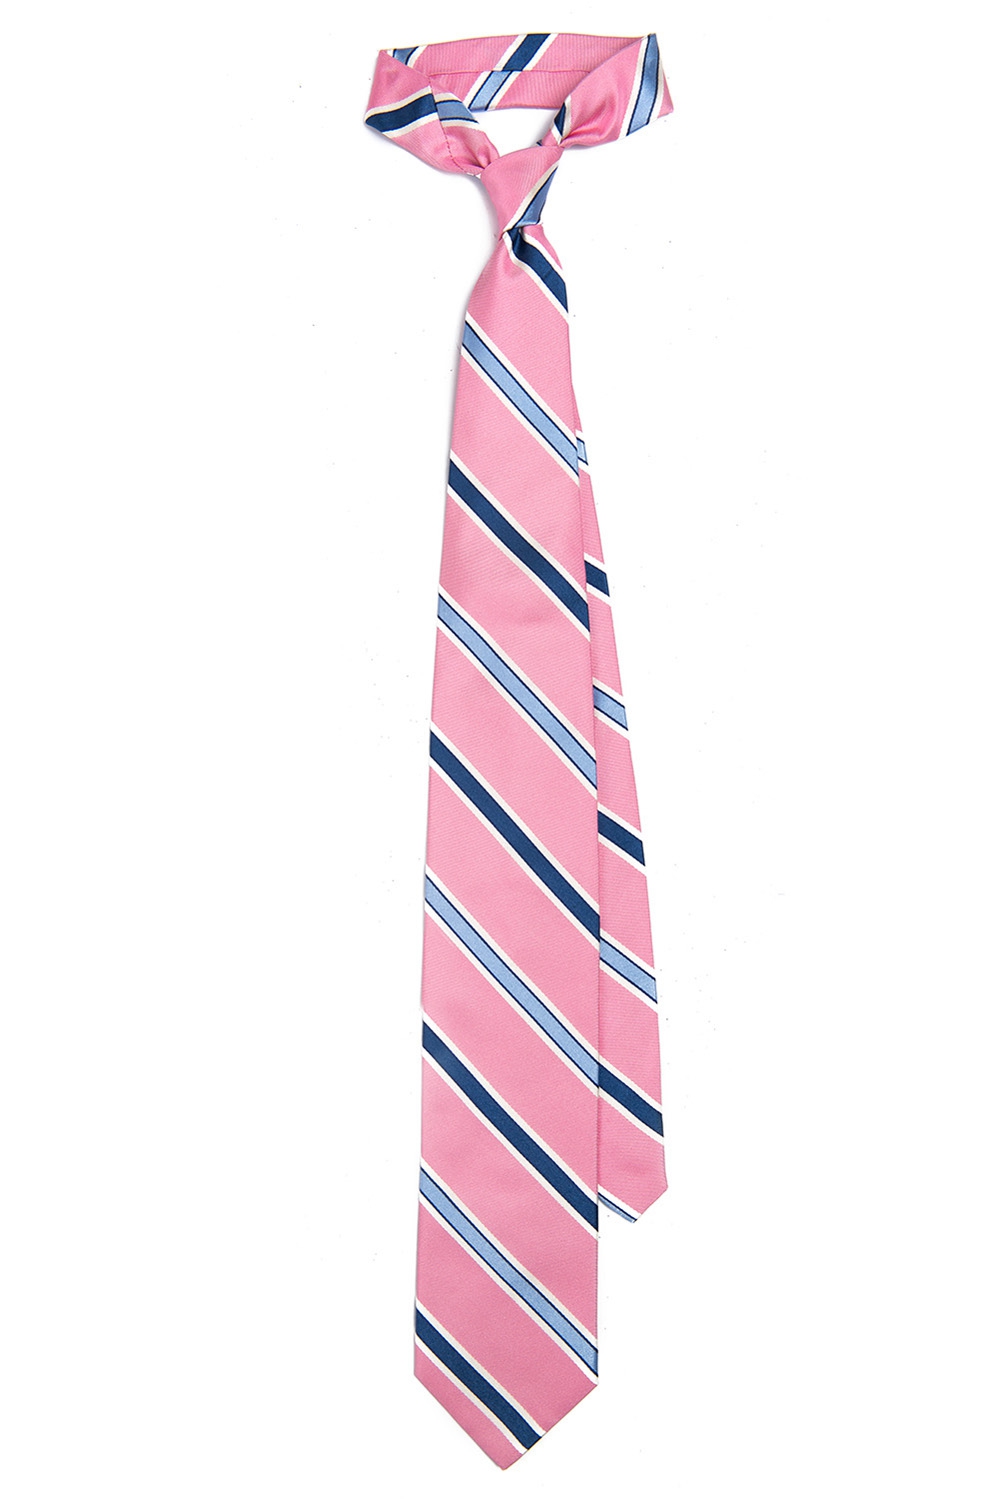 Cravat matase tesuta roz cu dungi 0